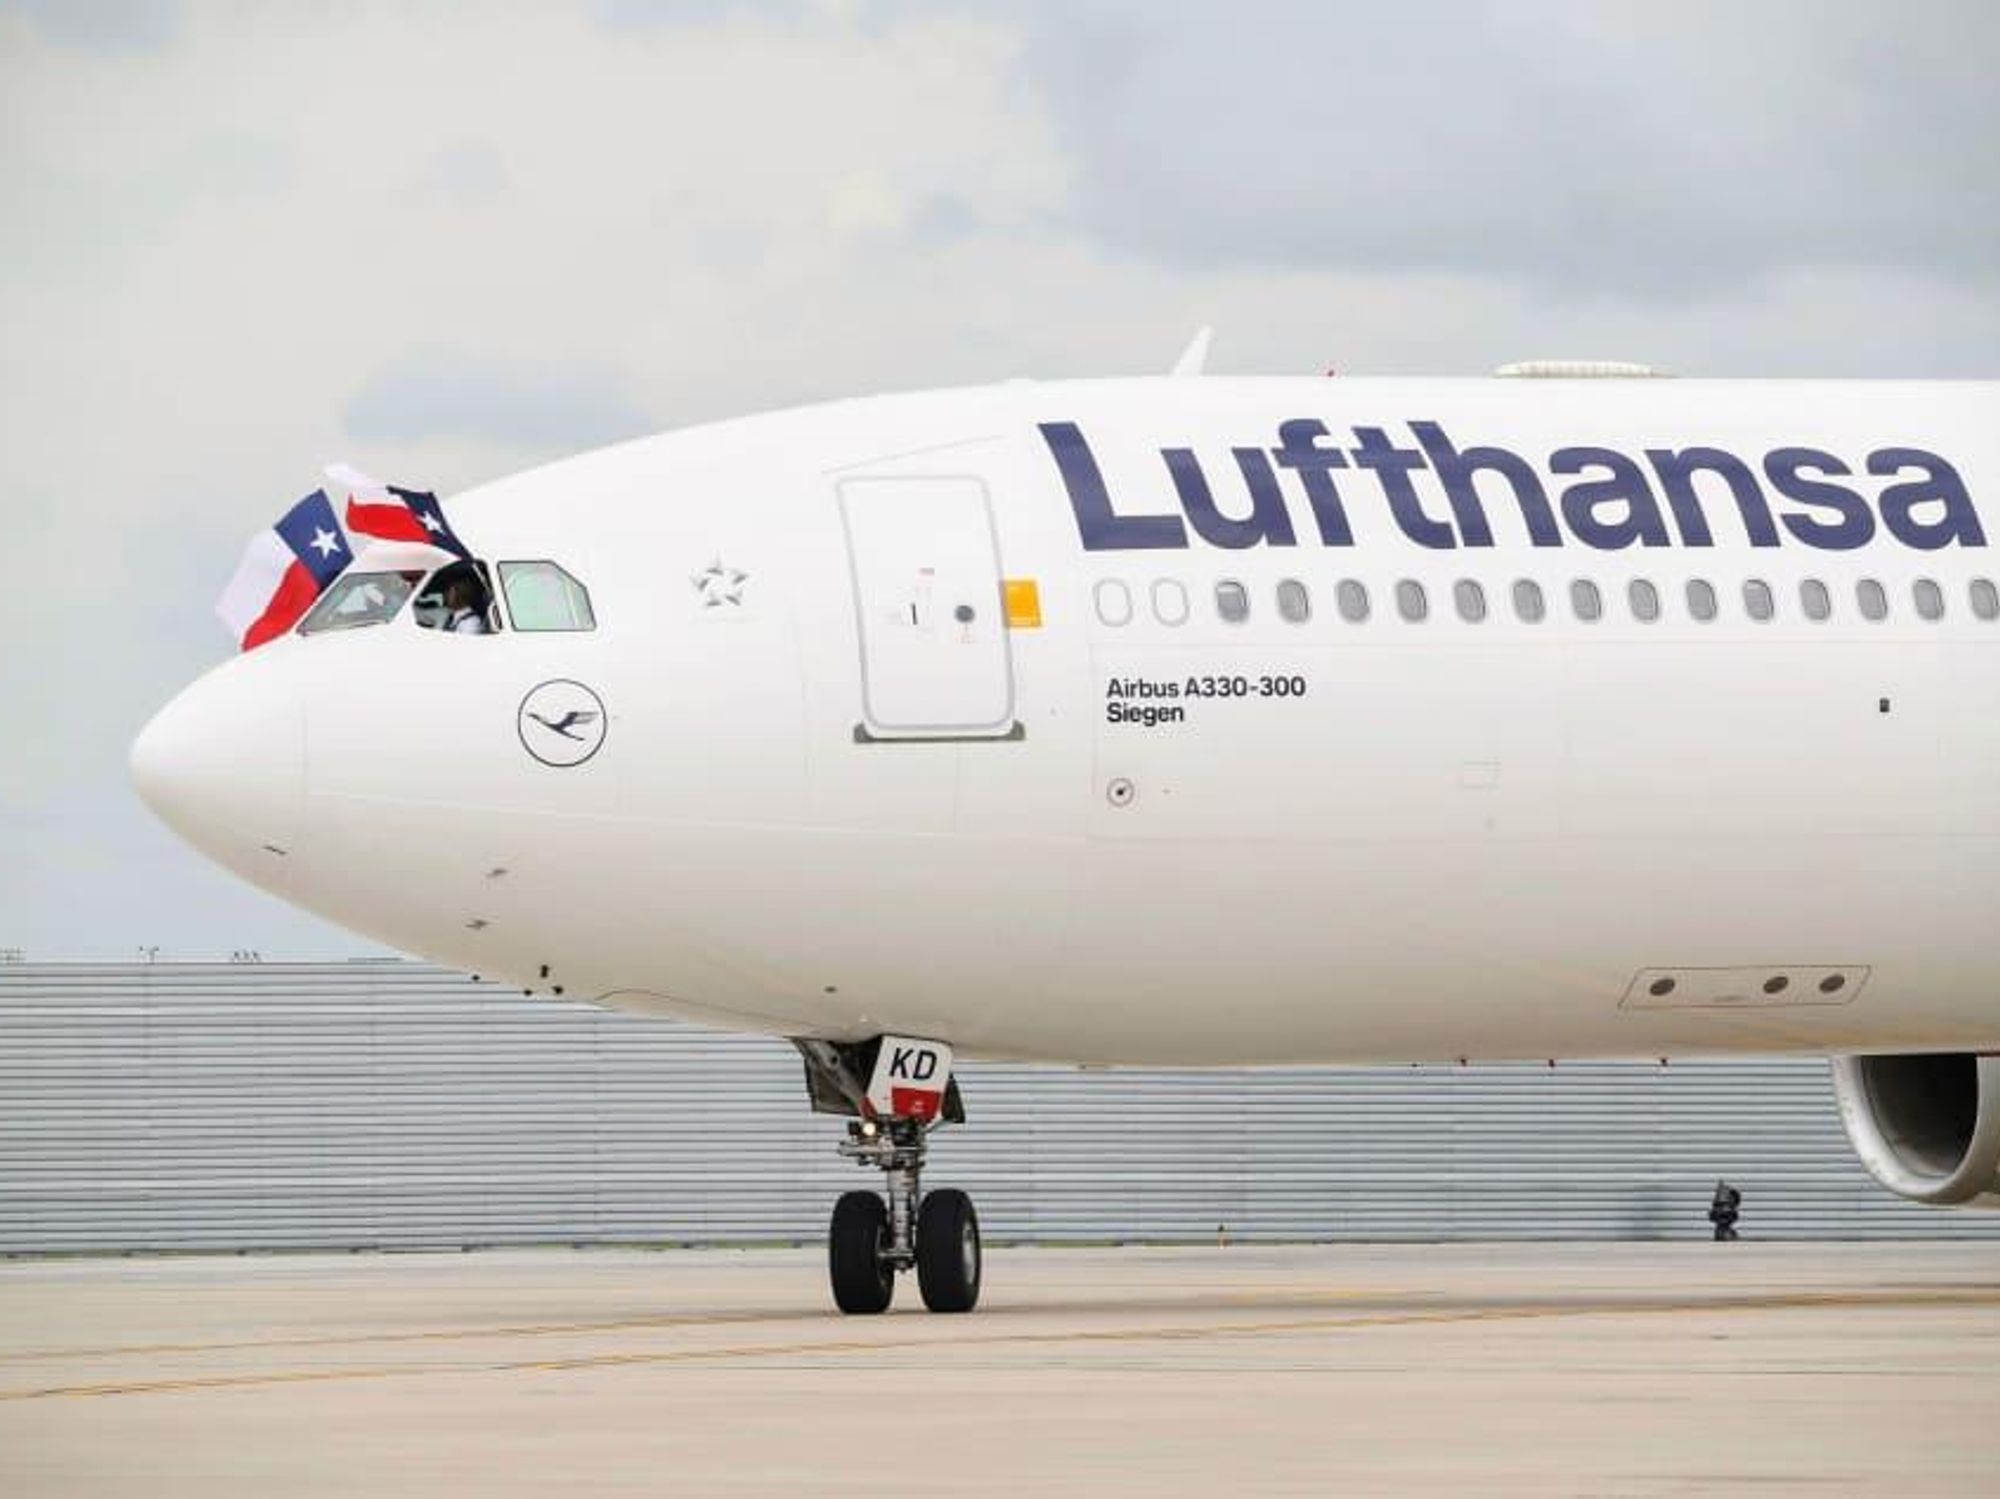 Lufthansa plane with Texas flag